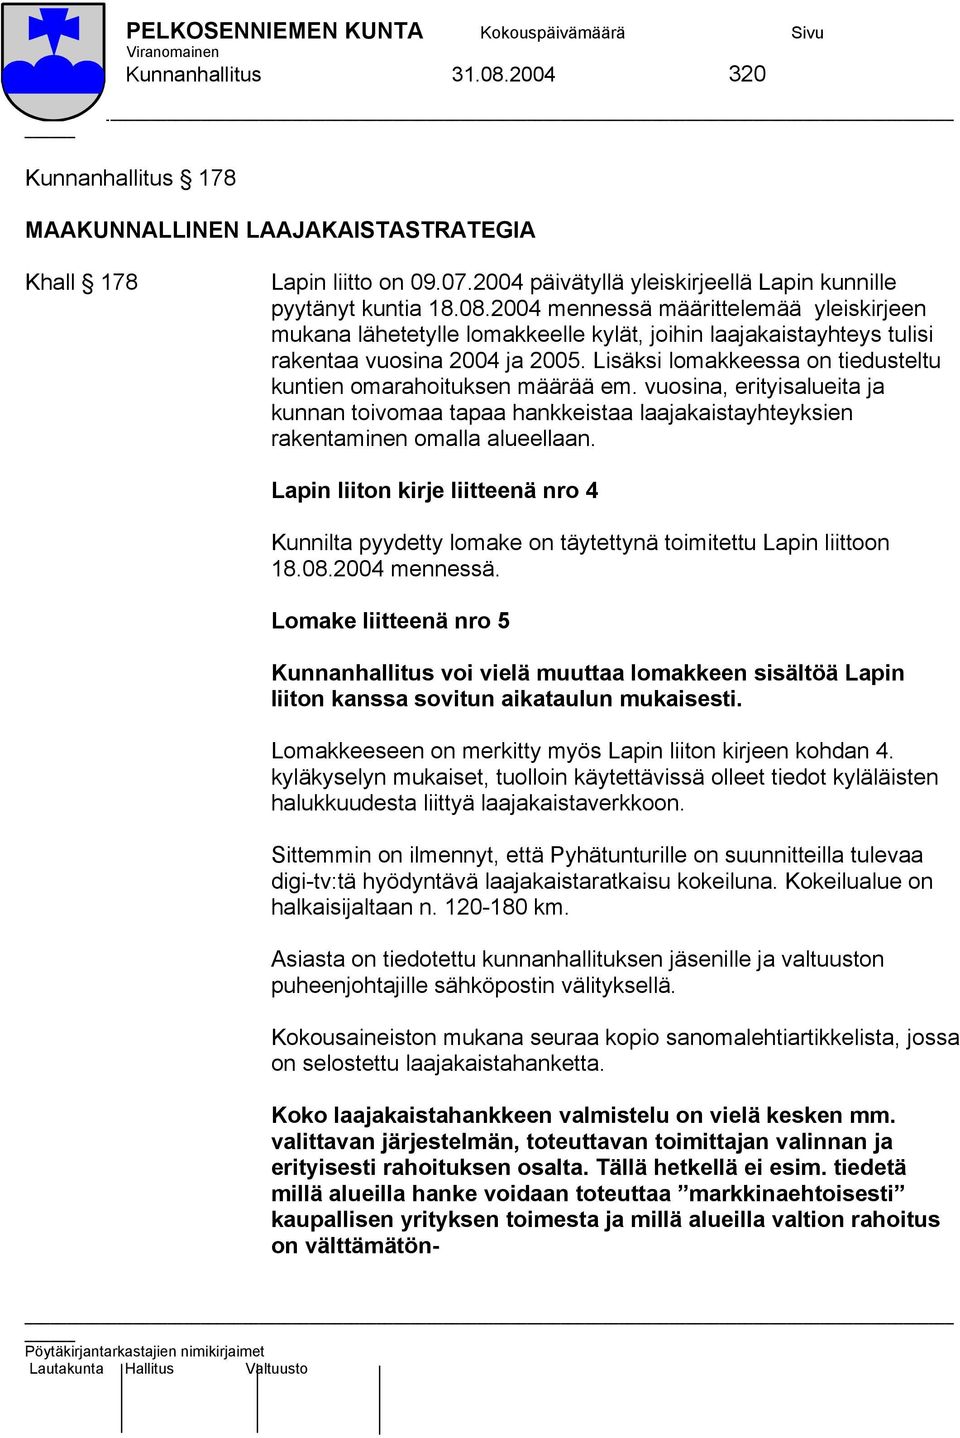 Lapin liiton kirje liitteenä nro 4 Kunnilta pyydetty lomake on täytettynä toimitettu Lapin liittoon 18.08.2004 mennessä.